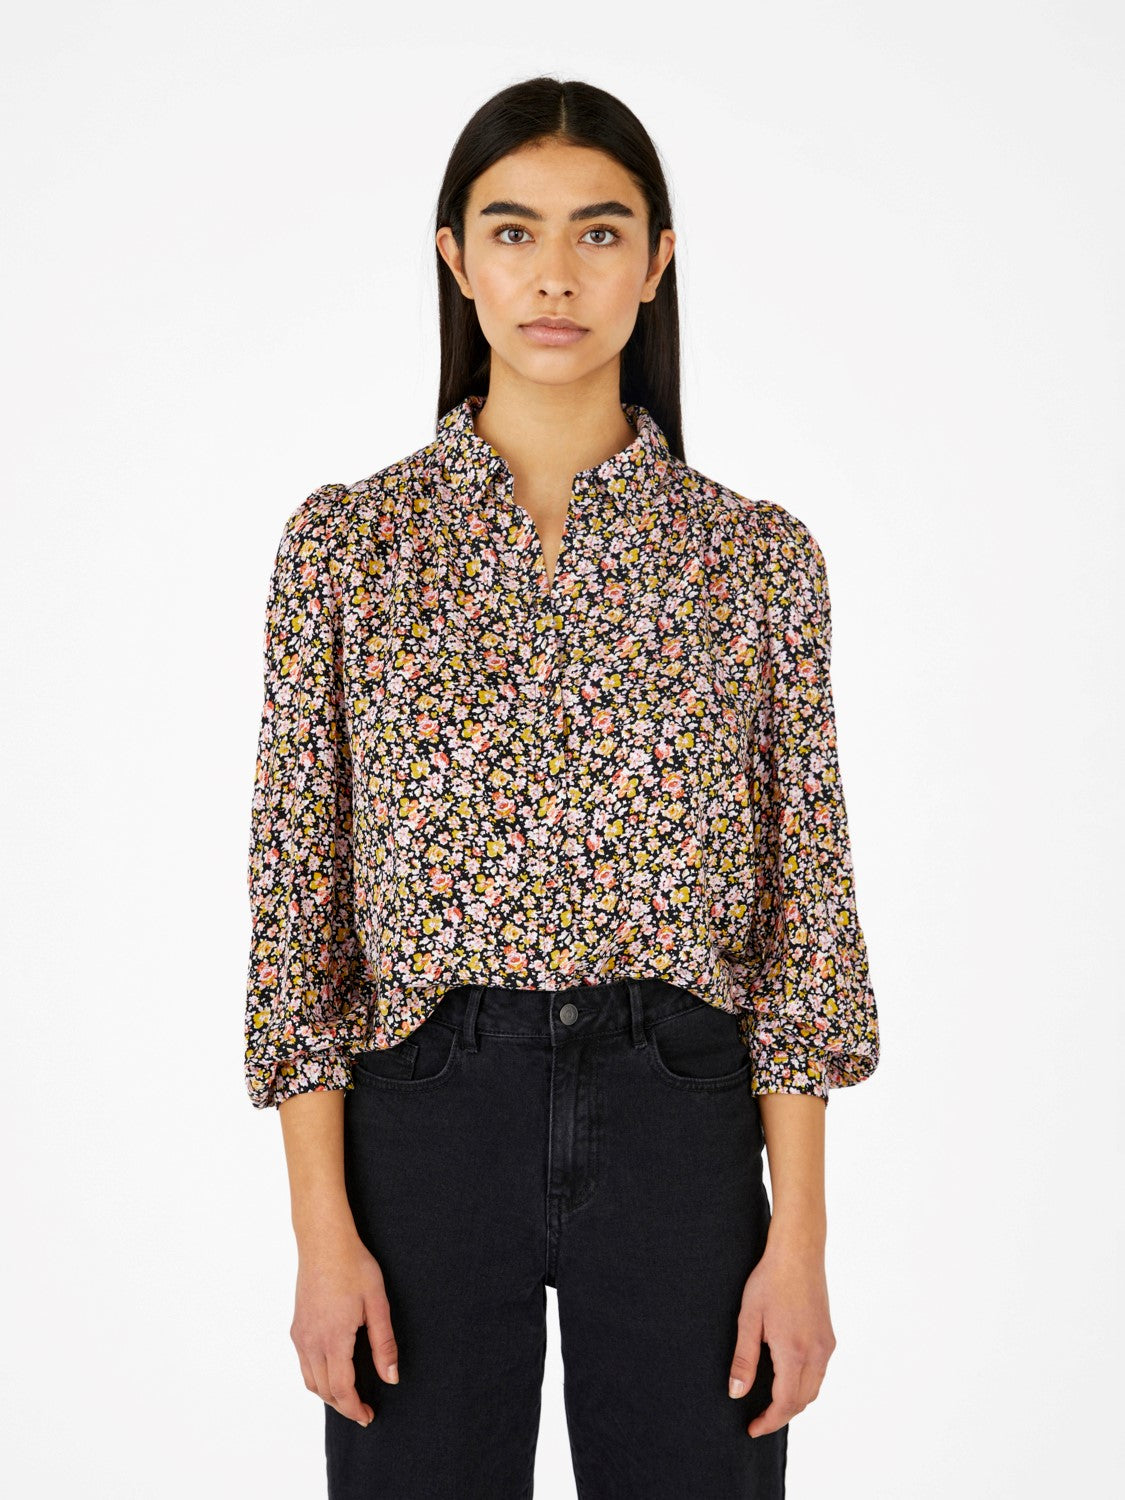 floral print blouse 